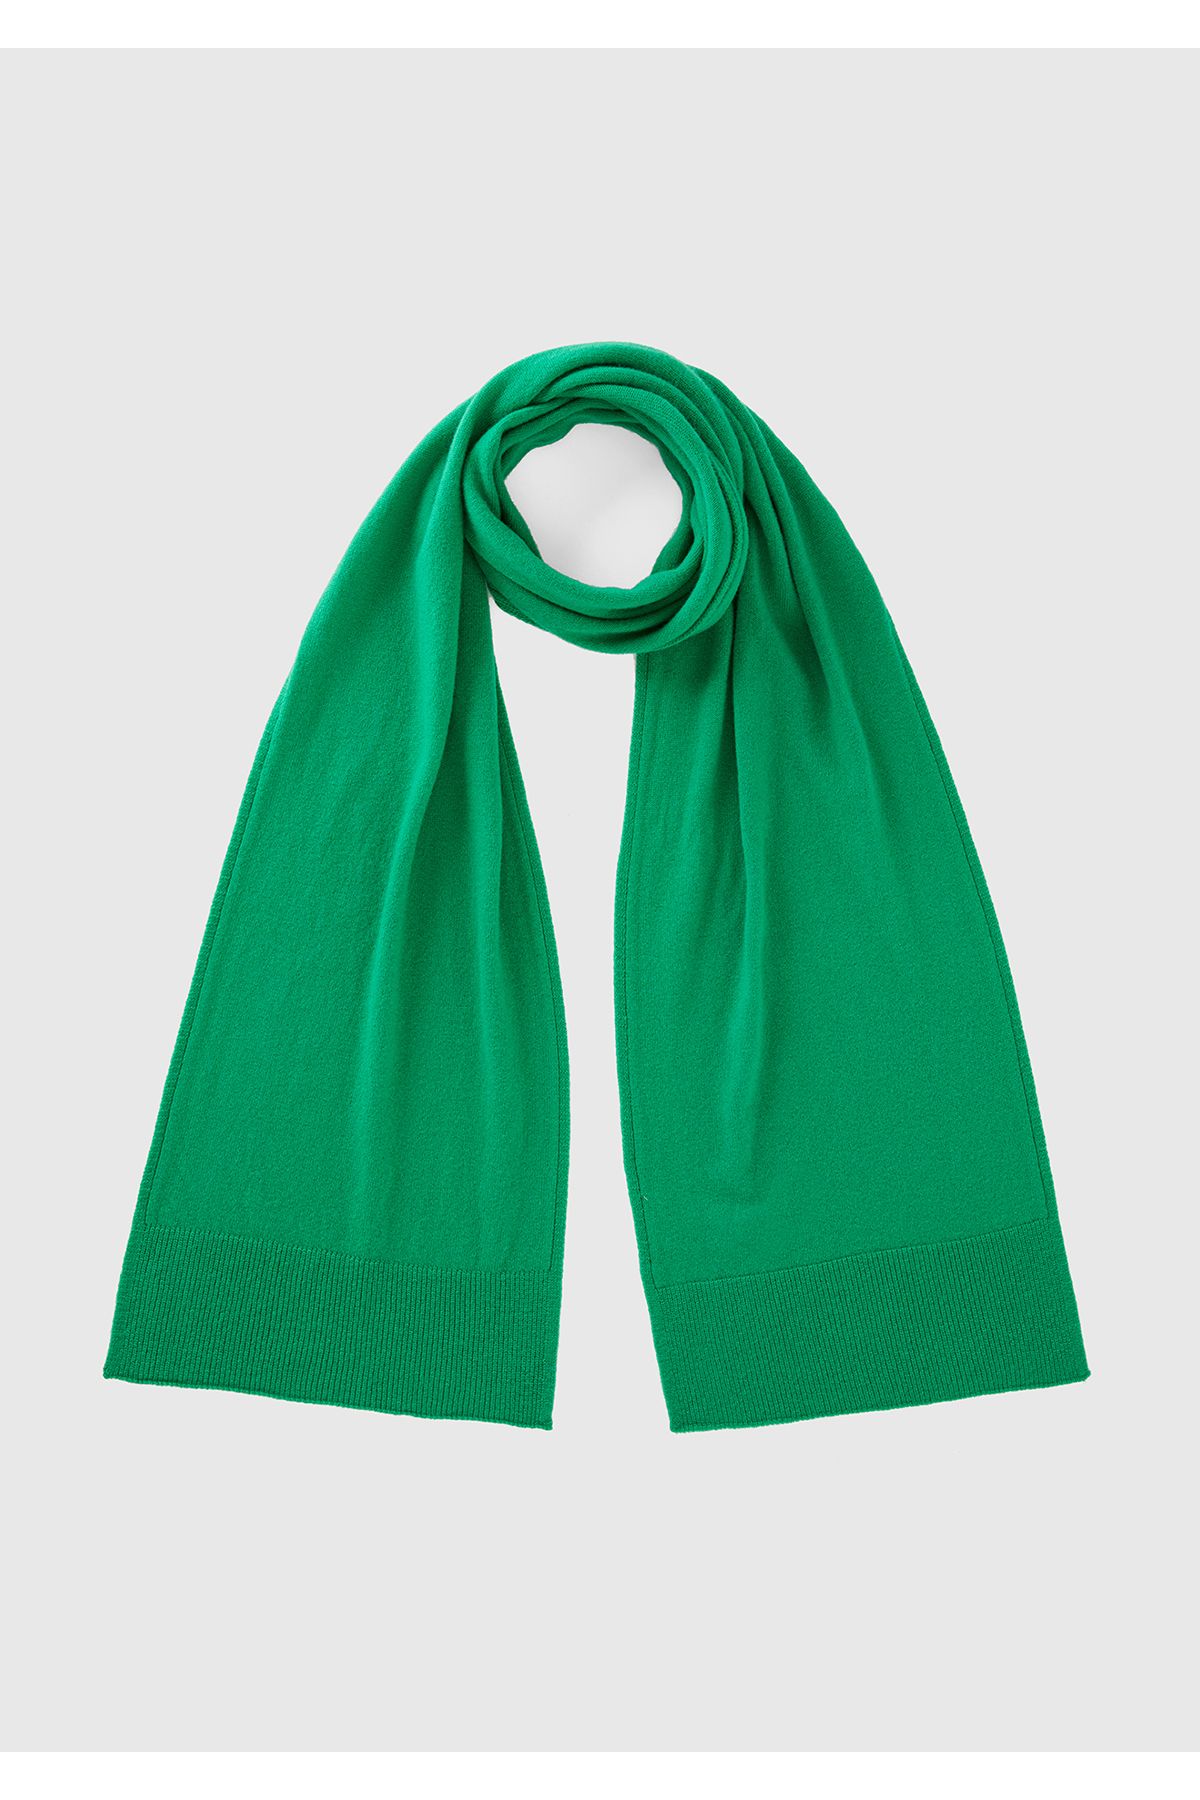 United Colors of Benetton Kadın Yeşil %100 Yün Atkı